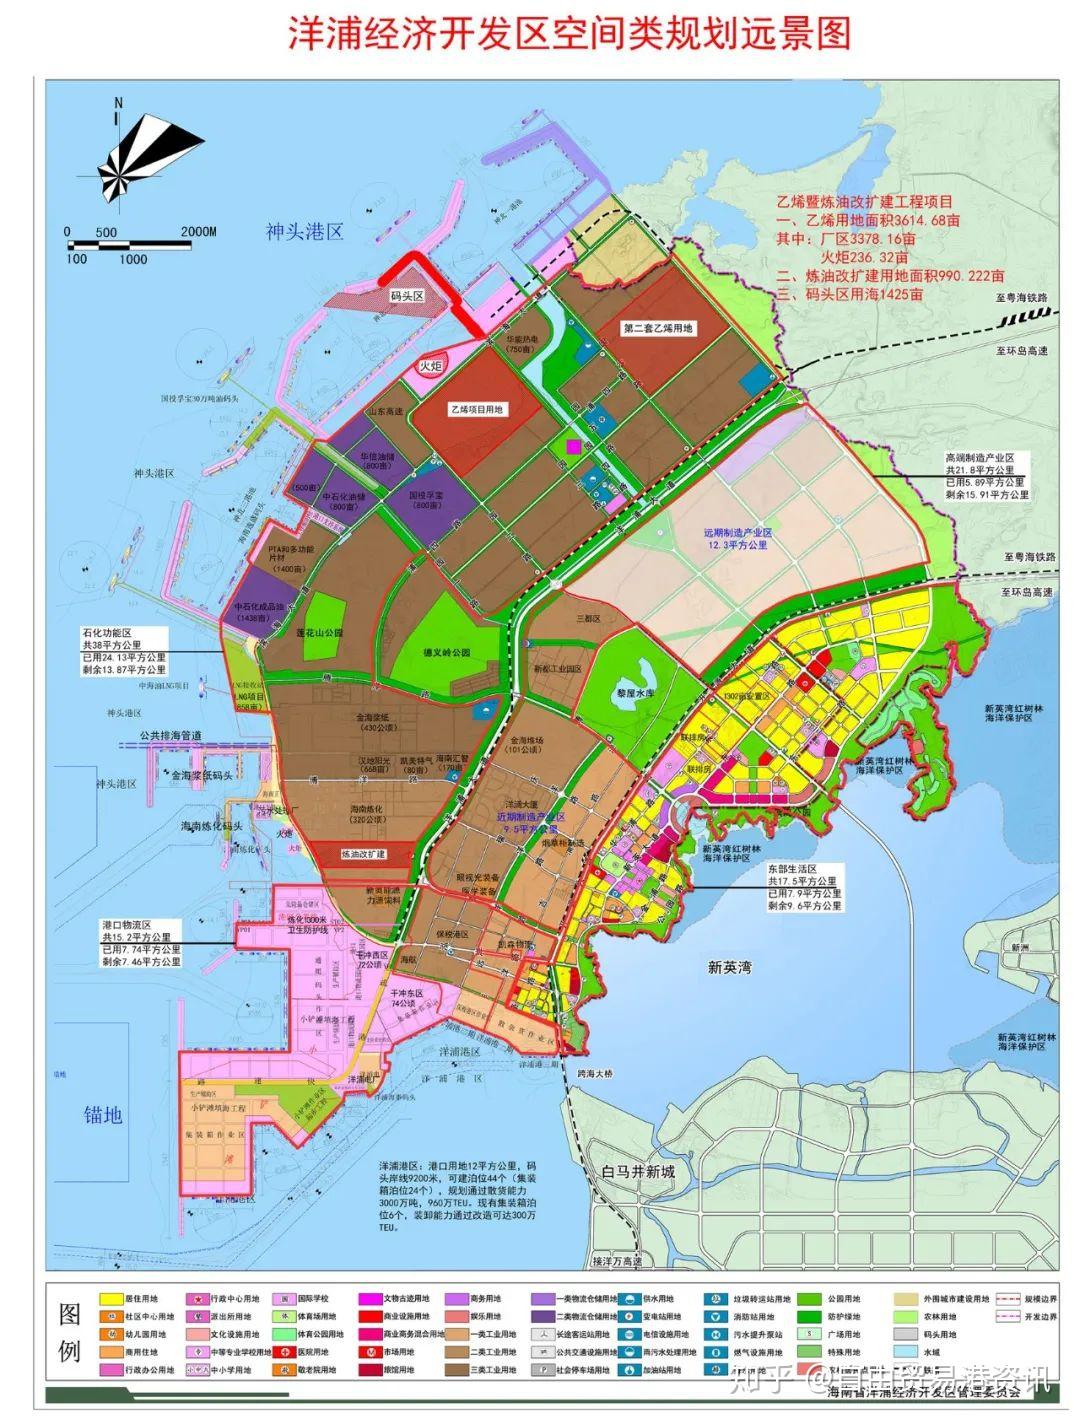 海南自贸港重点园区之二丨海南先进制造业基地洋浦经济开发区